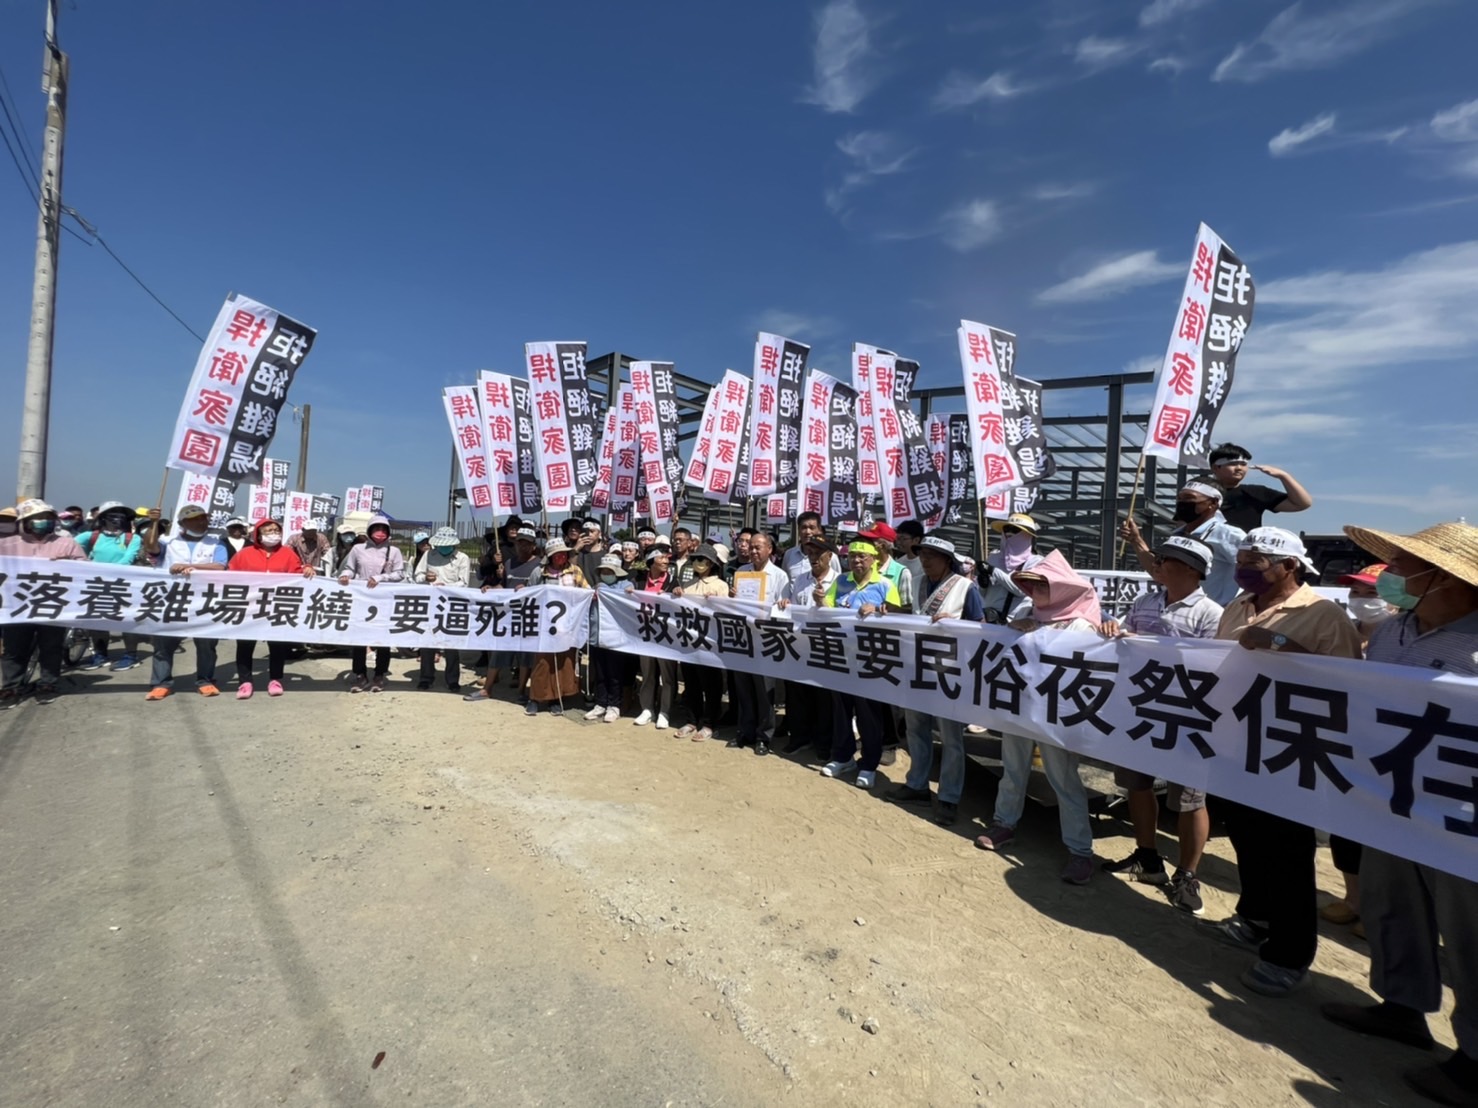 臺南市農業局回應東山區東河里居民反對設置畜牧場案...